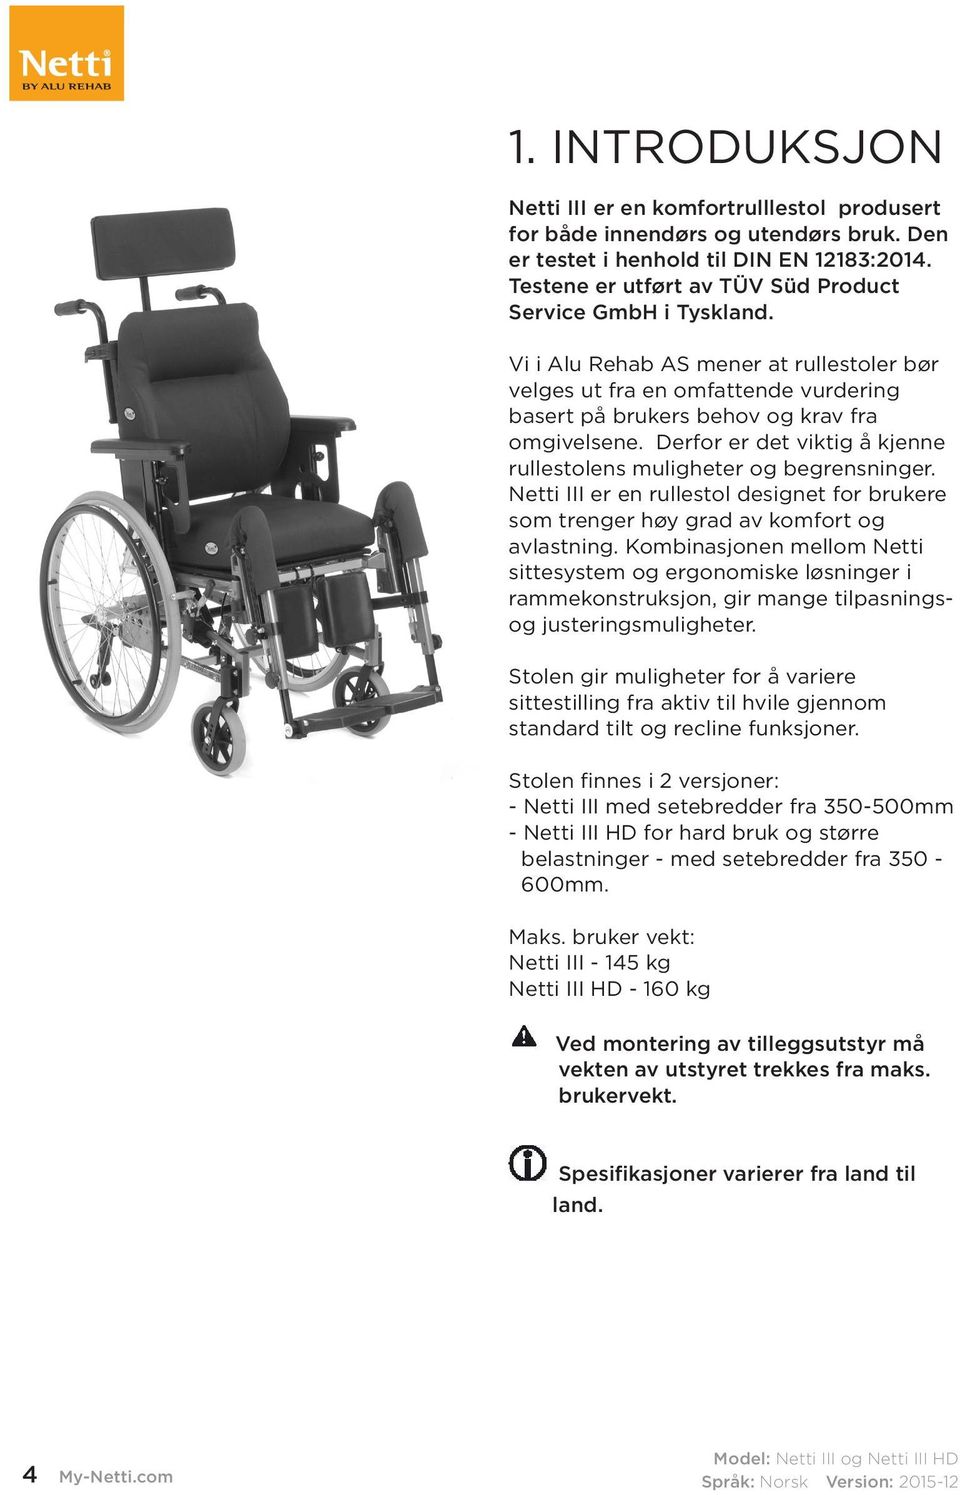 Derfor er det viktig å kjenne rullestolens muligheter og begrensninger. Netti III er en rullestol designet for brukere som trenger høy grad av komfort og avlastning.